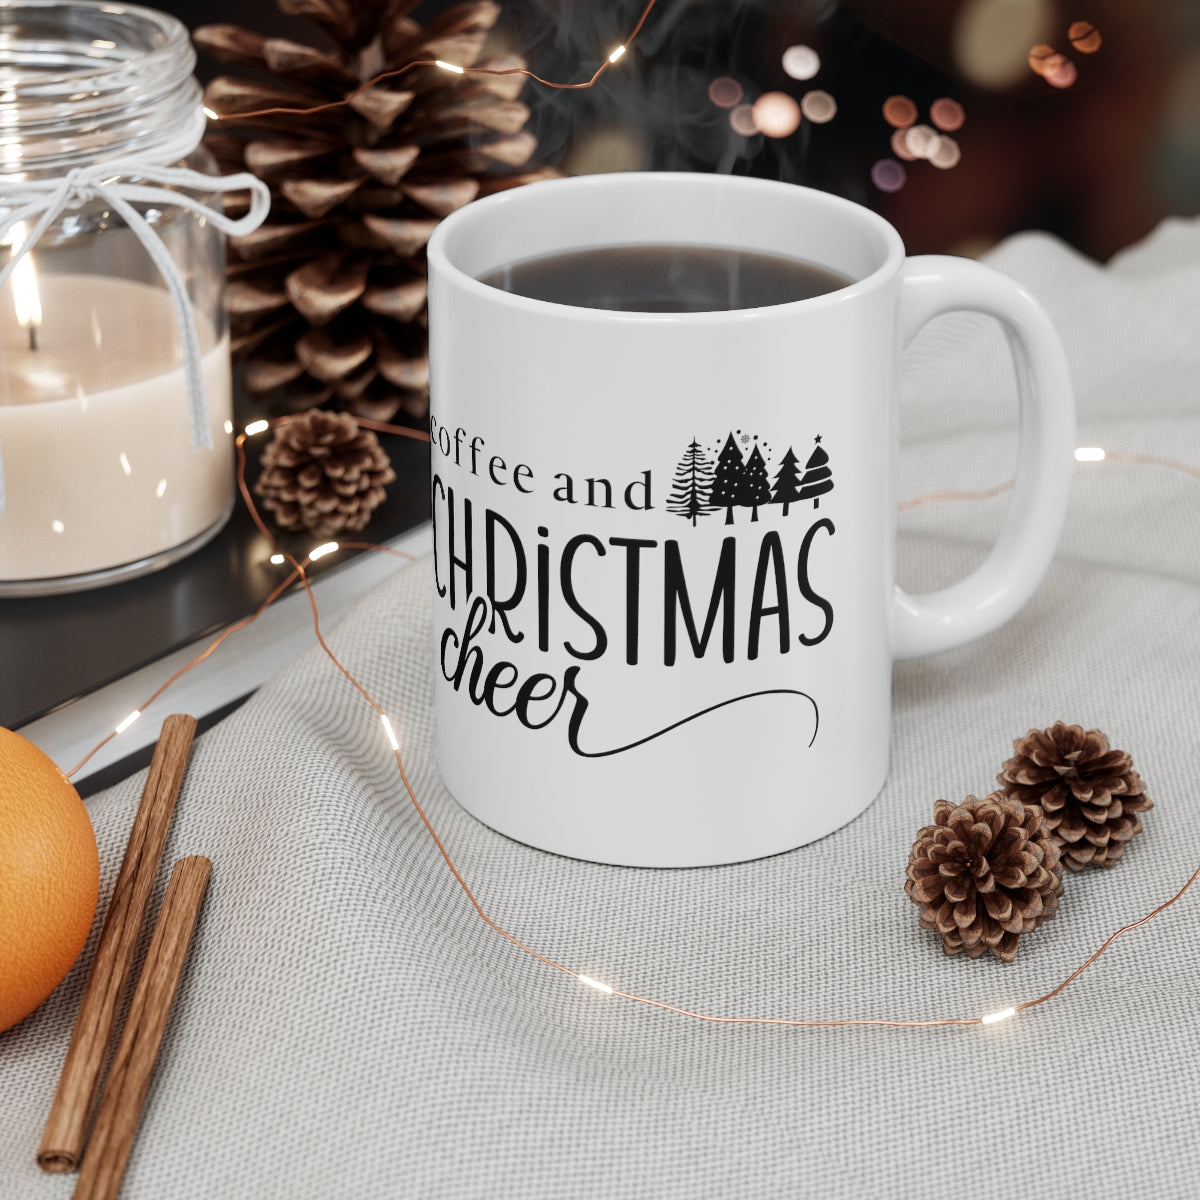 coffee and Christmas cheer 11oz mug